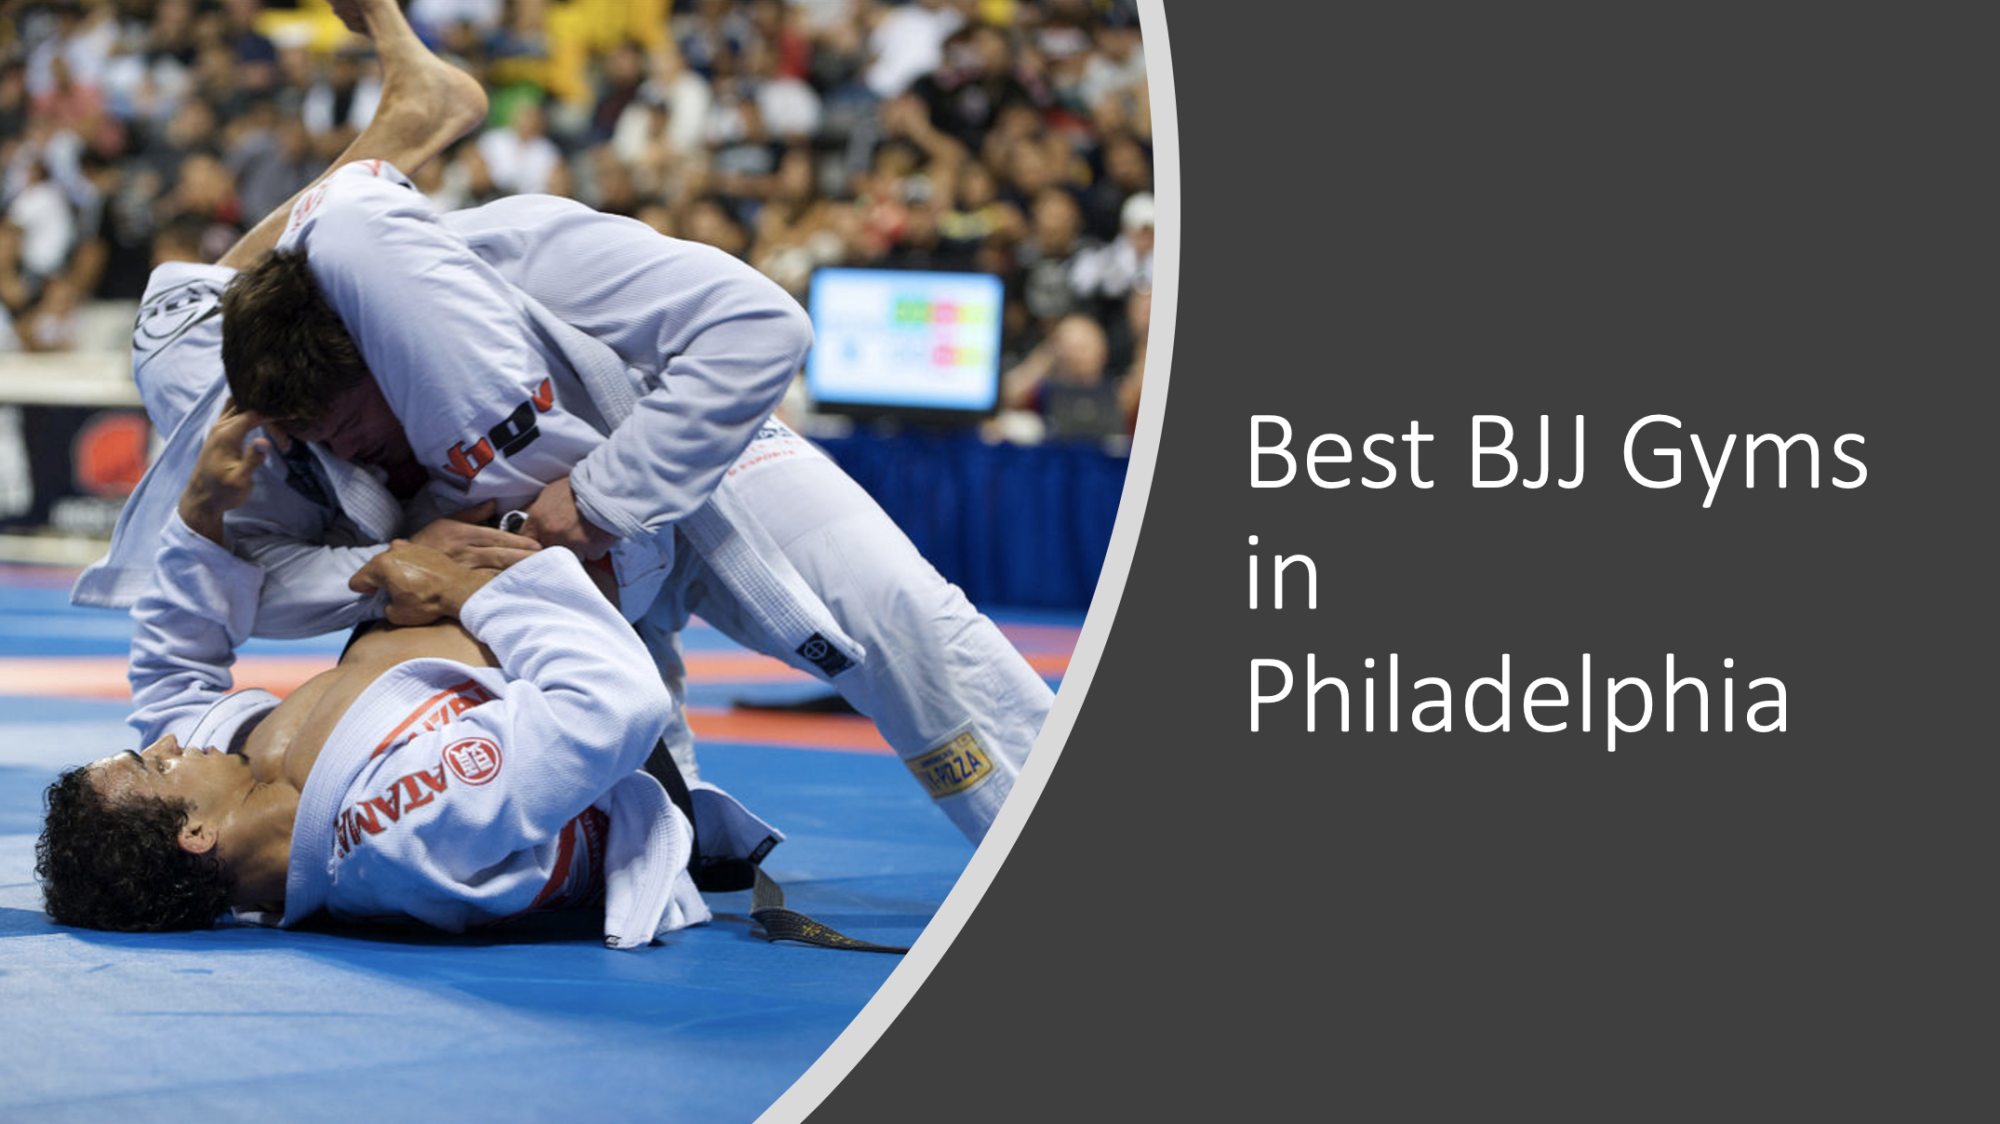 7 Best Brazilian Jiu Jitsu (BJJ) Gyms in Philadelphia